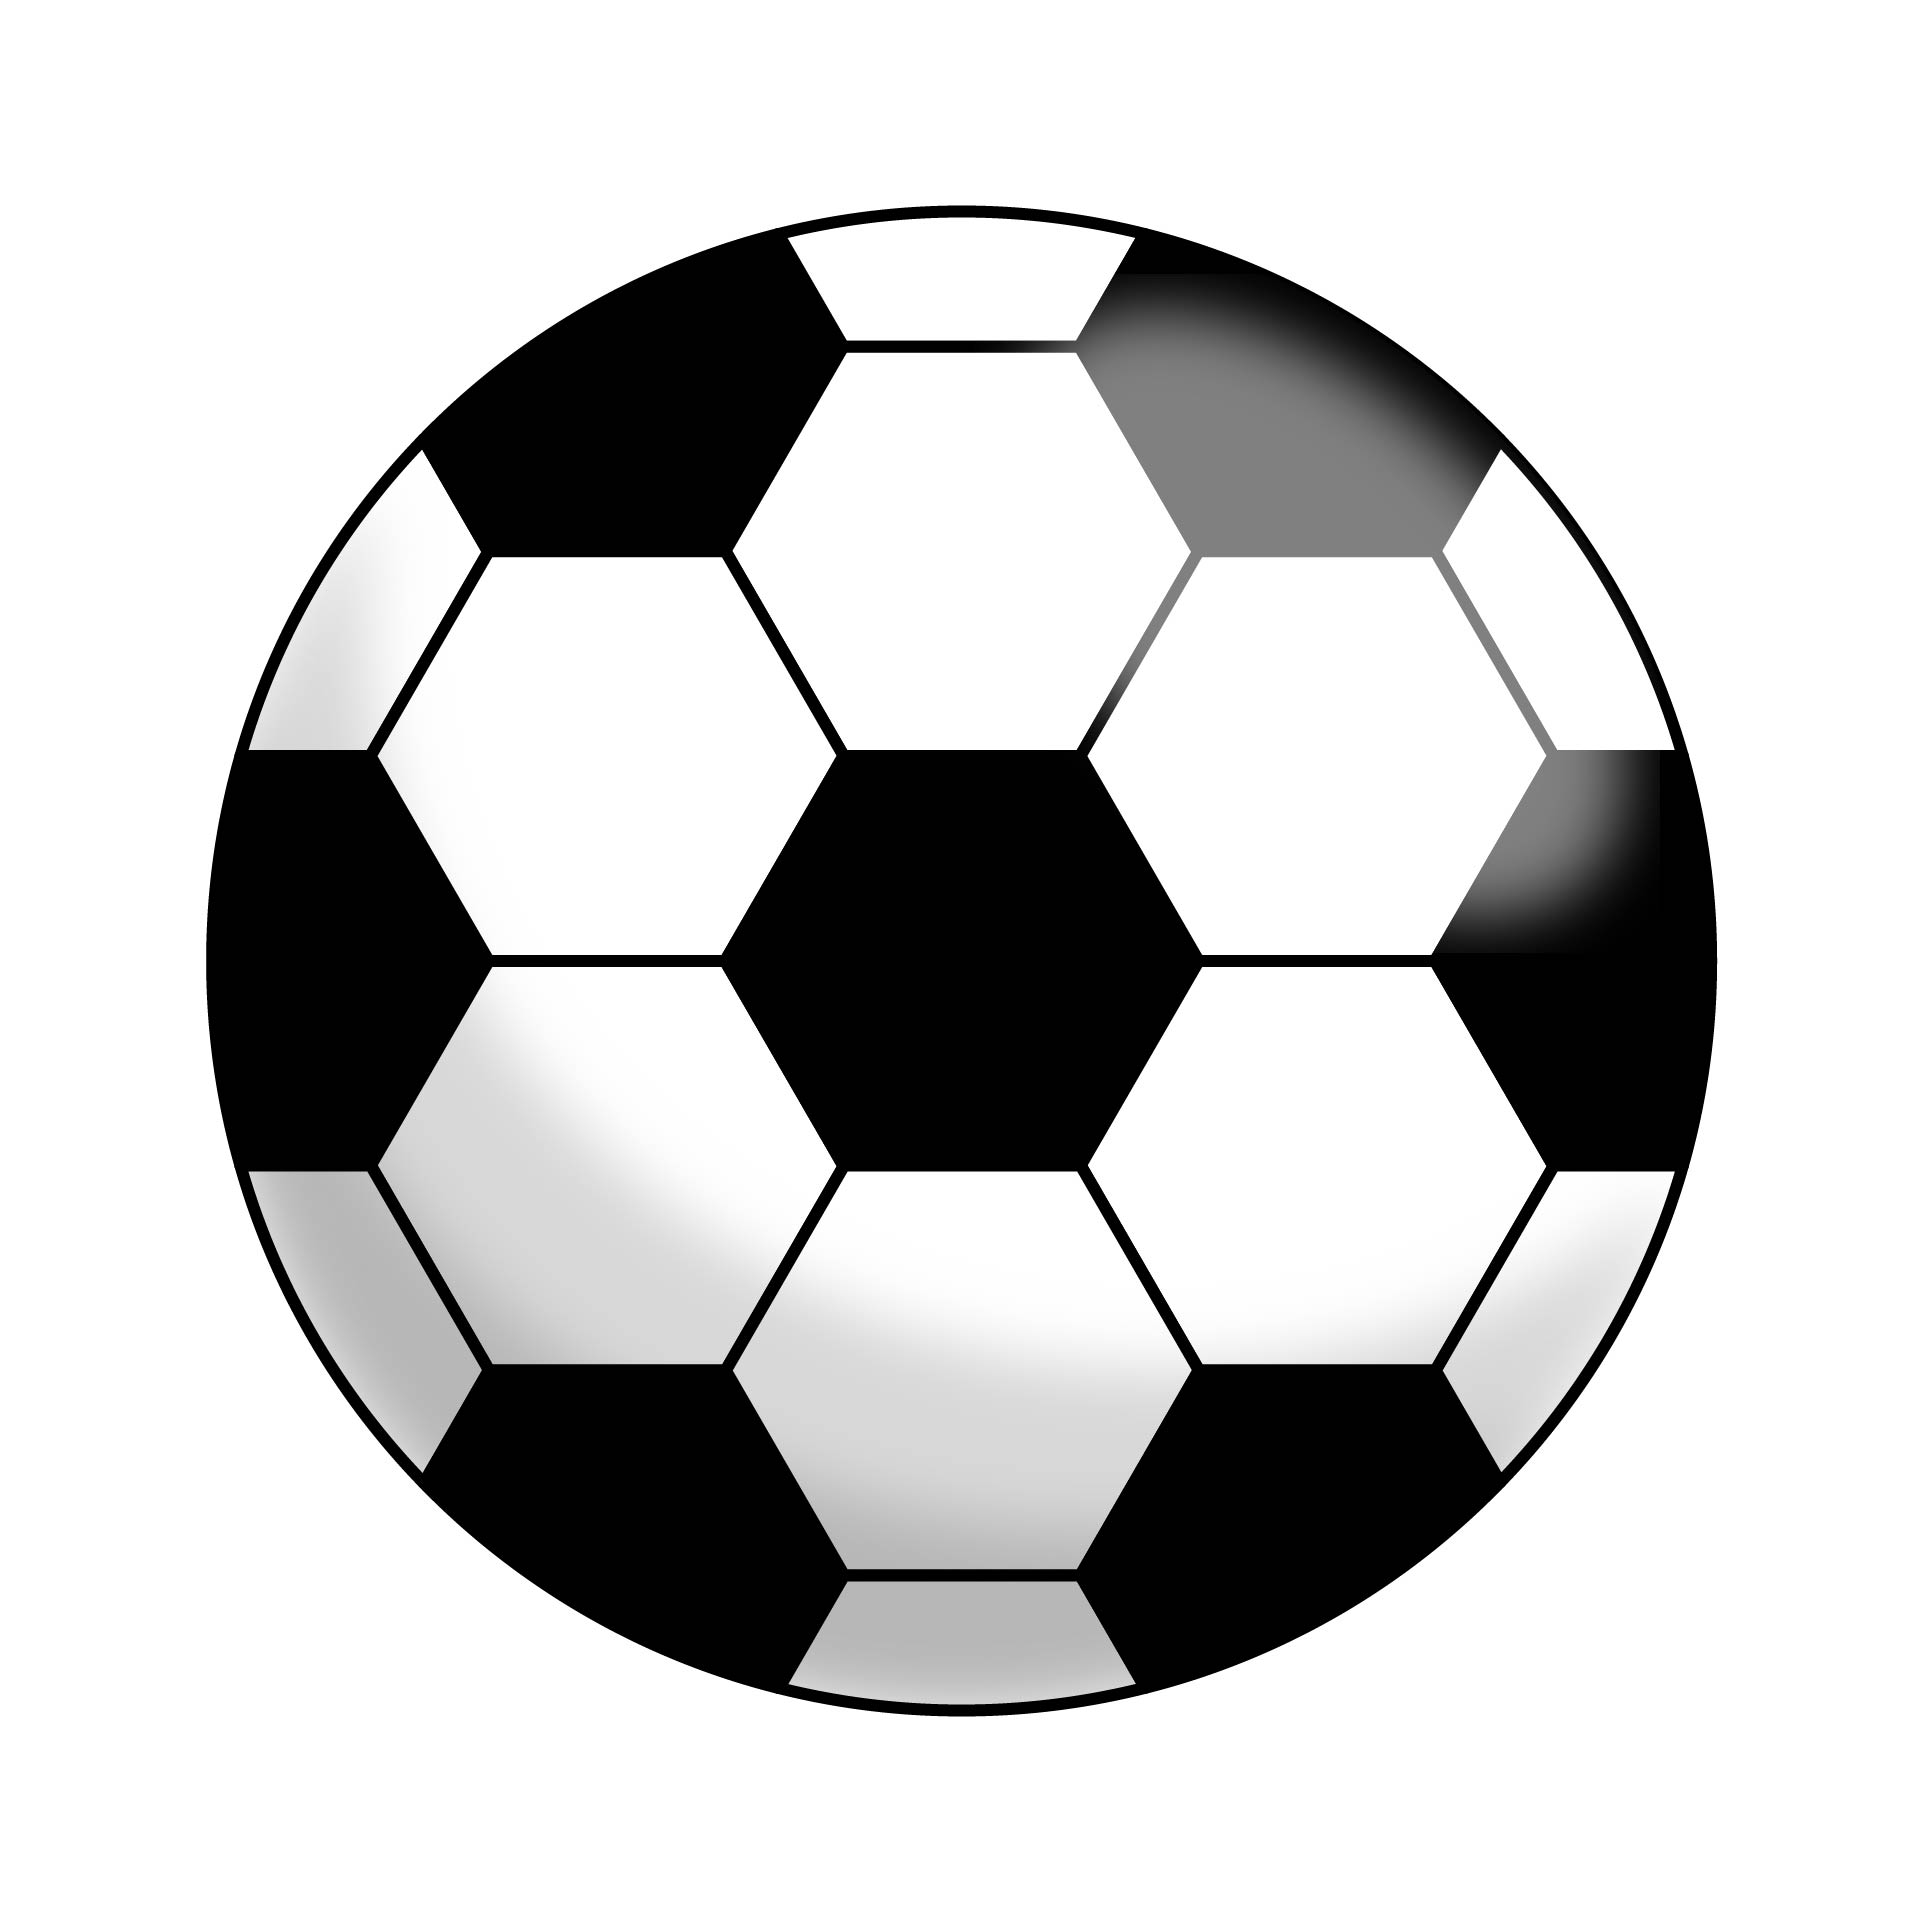 Free Printable Soccer Ball